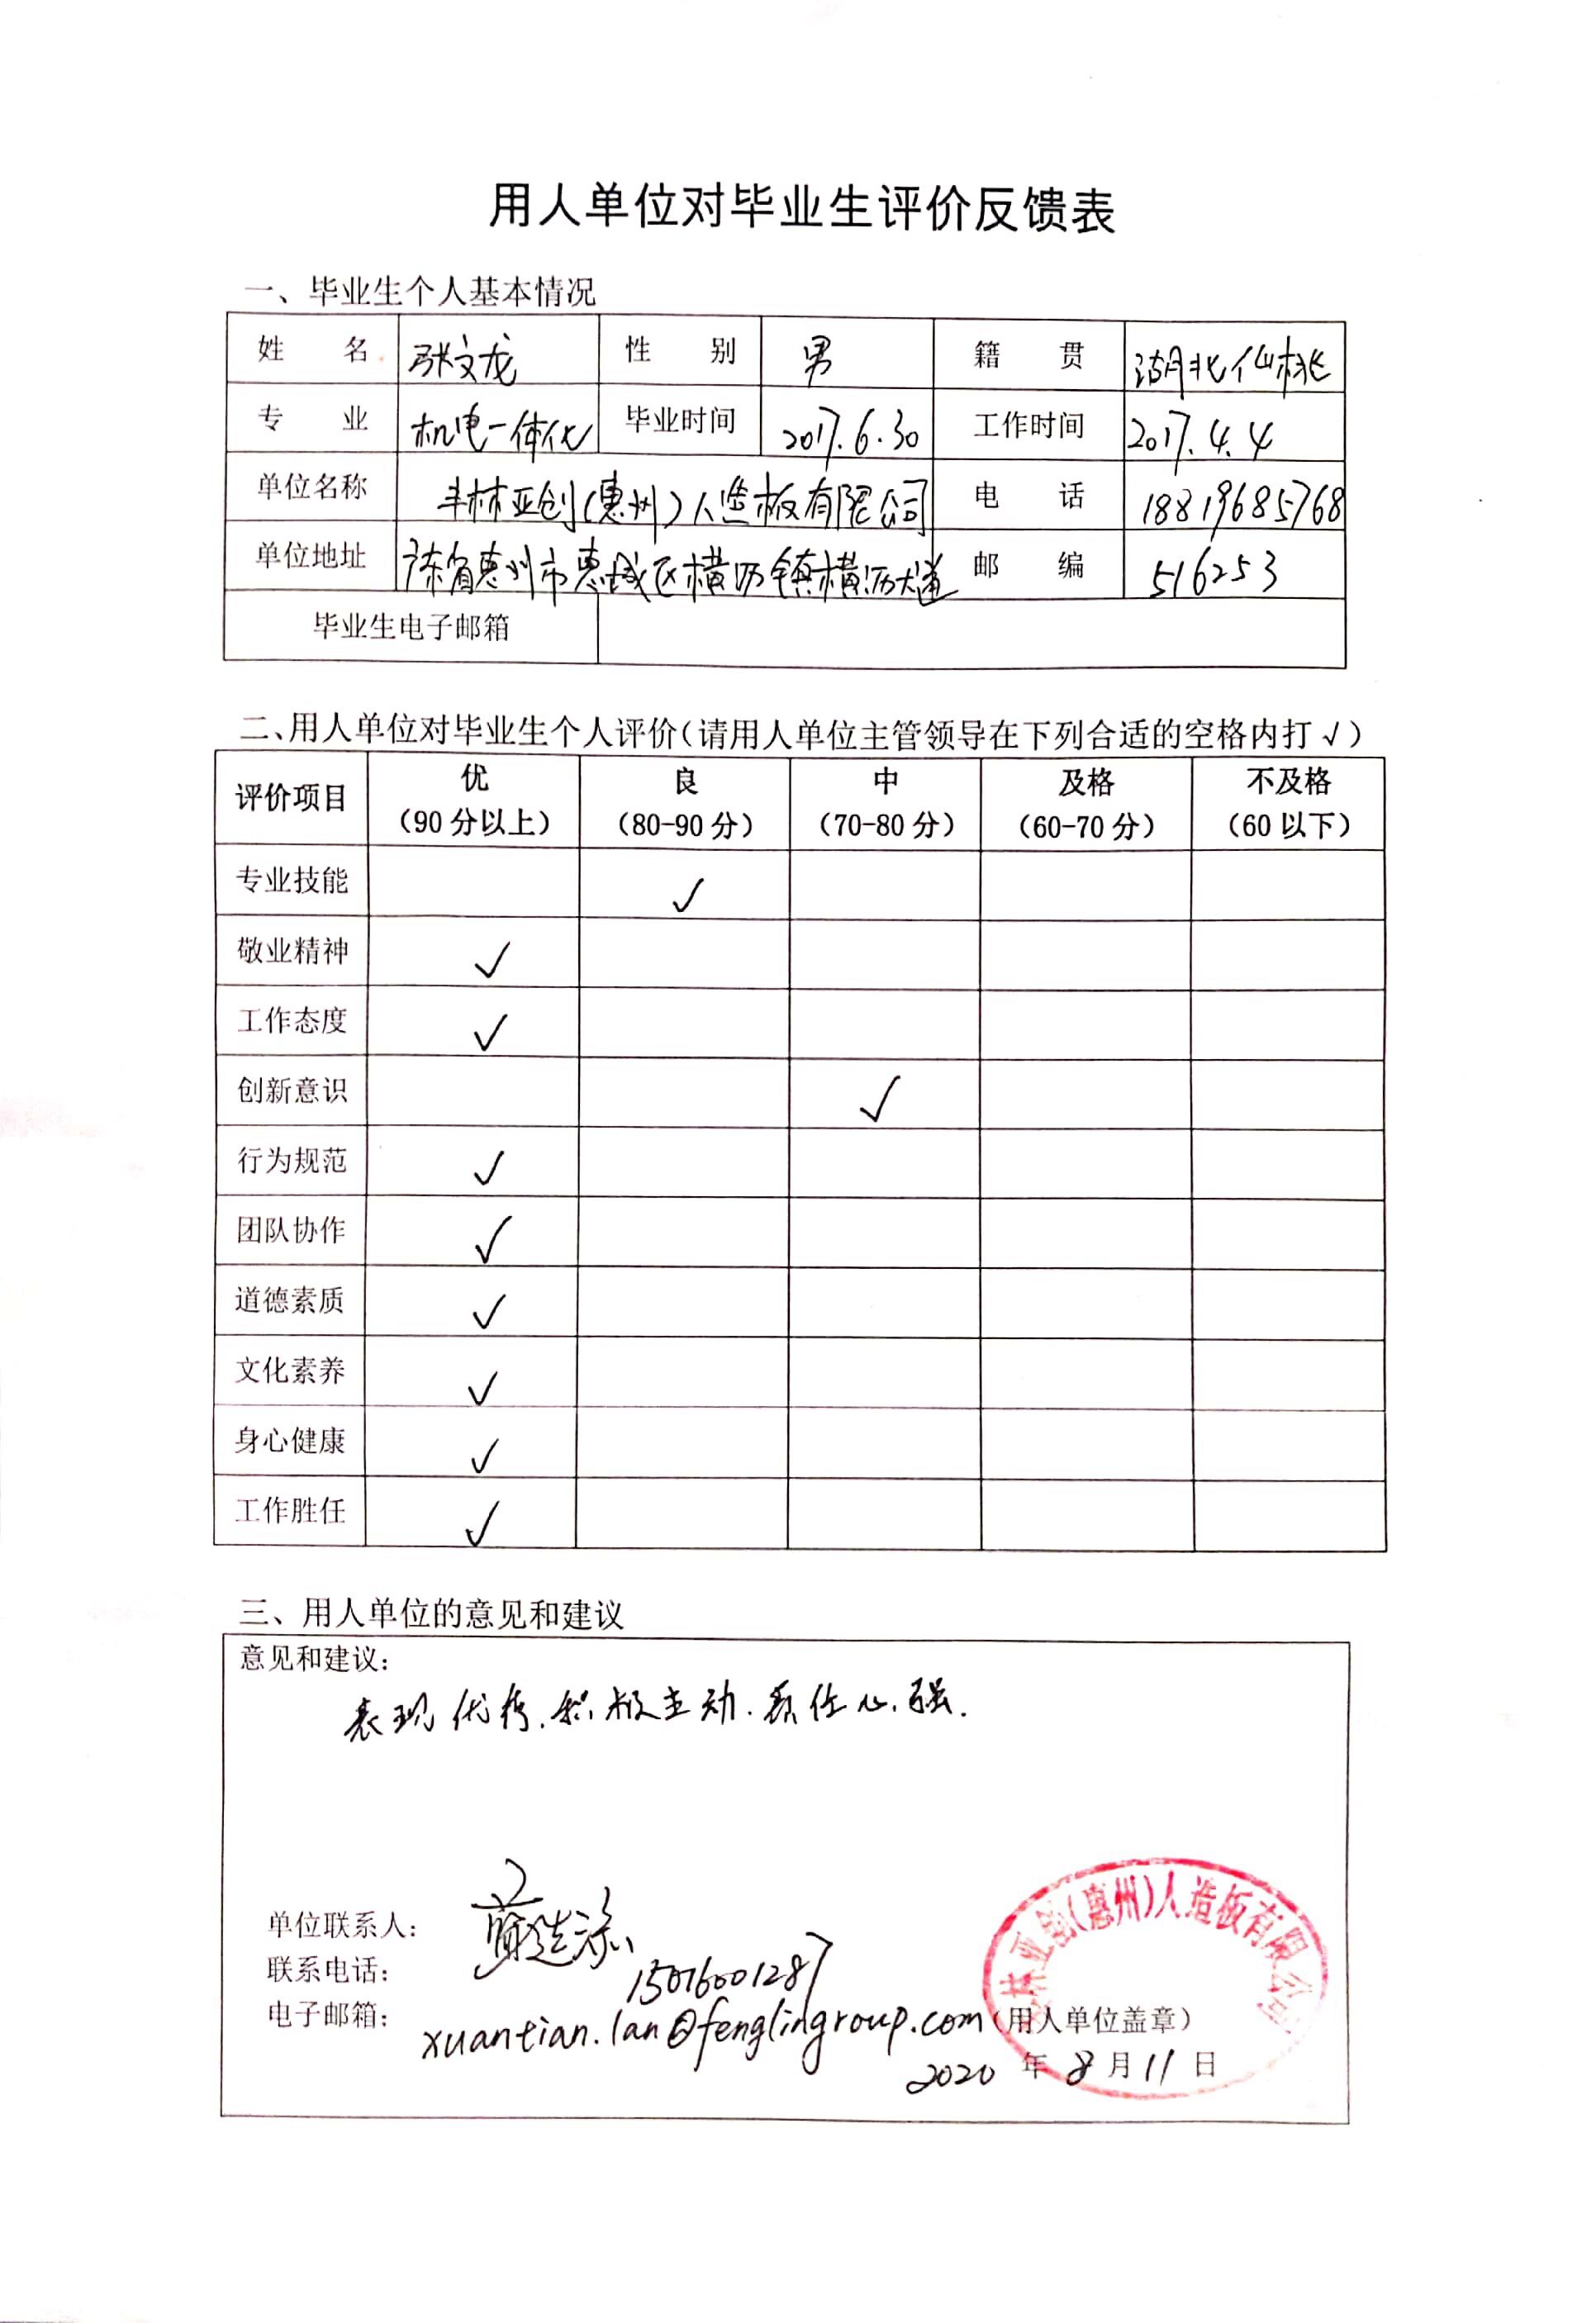 用人单位对毕业生评价反馈表-丰林亚创（惠州）人造板有限公司.jpg